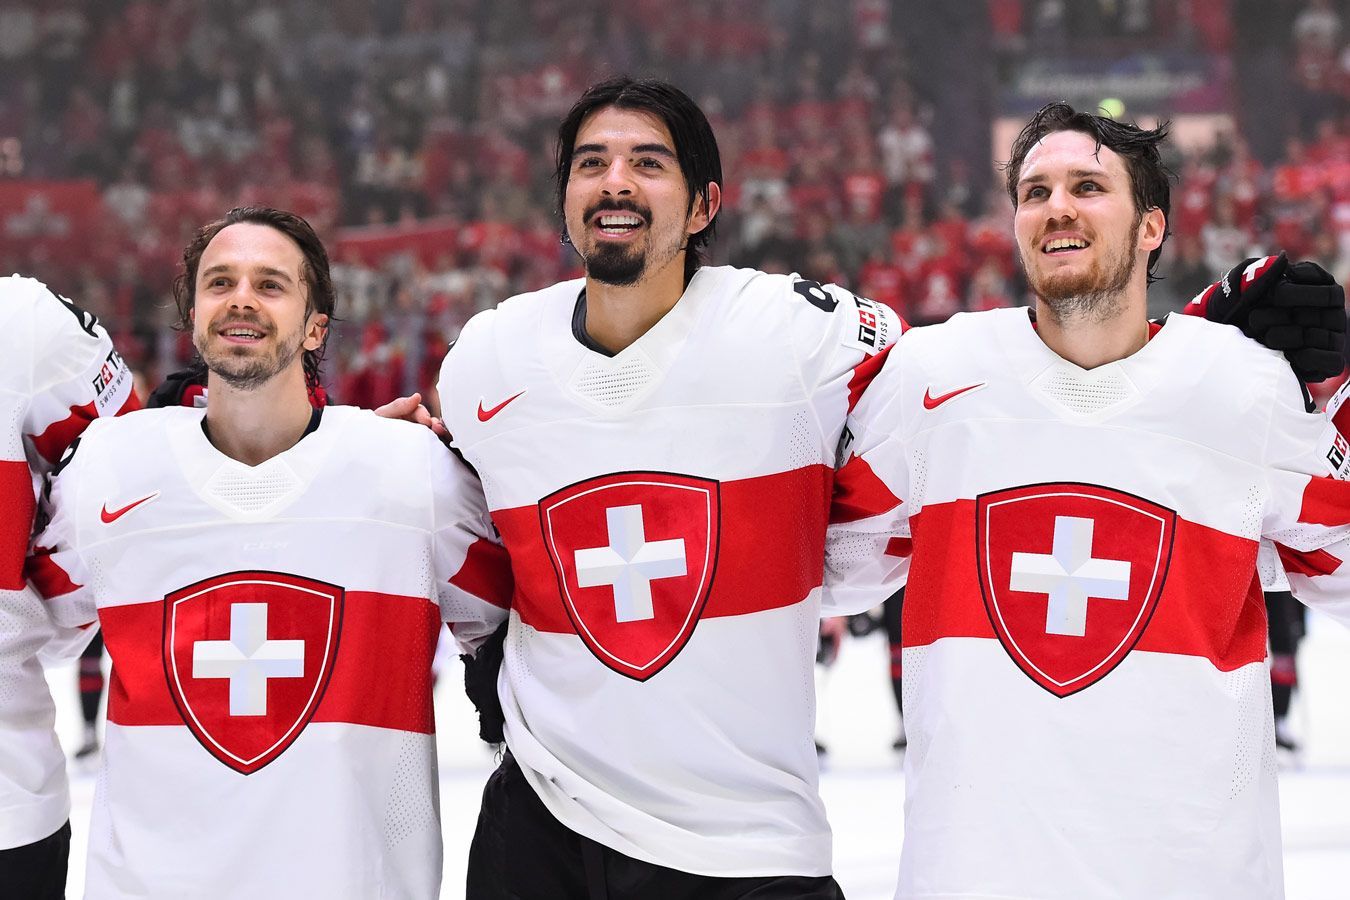 Германия — Швейцария прогноз на матч 24 мая на ЧМ-2022 по хоккею: ставки и коэффициенты на игру